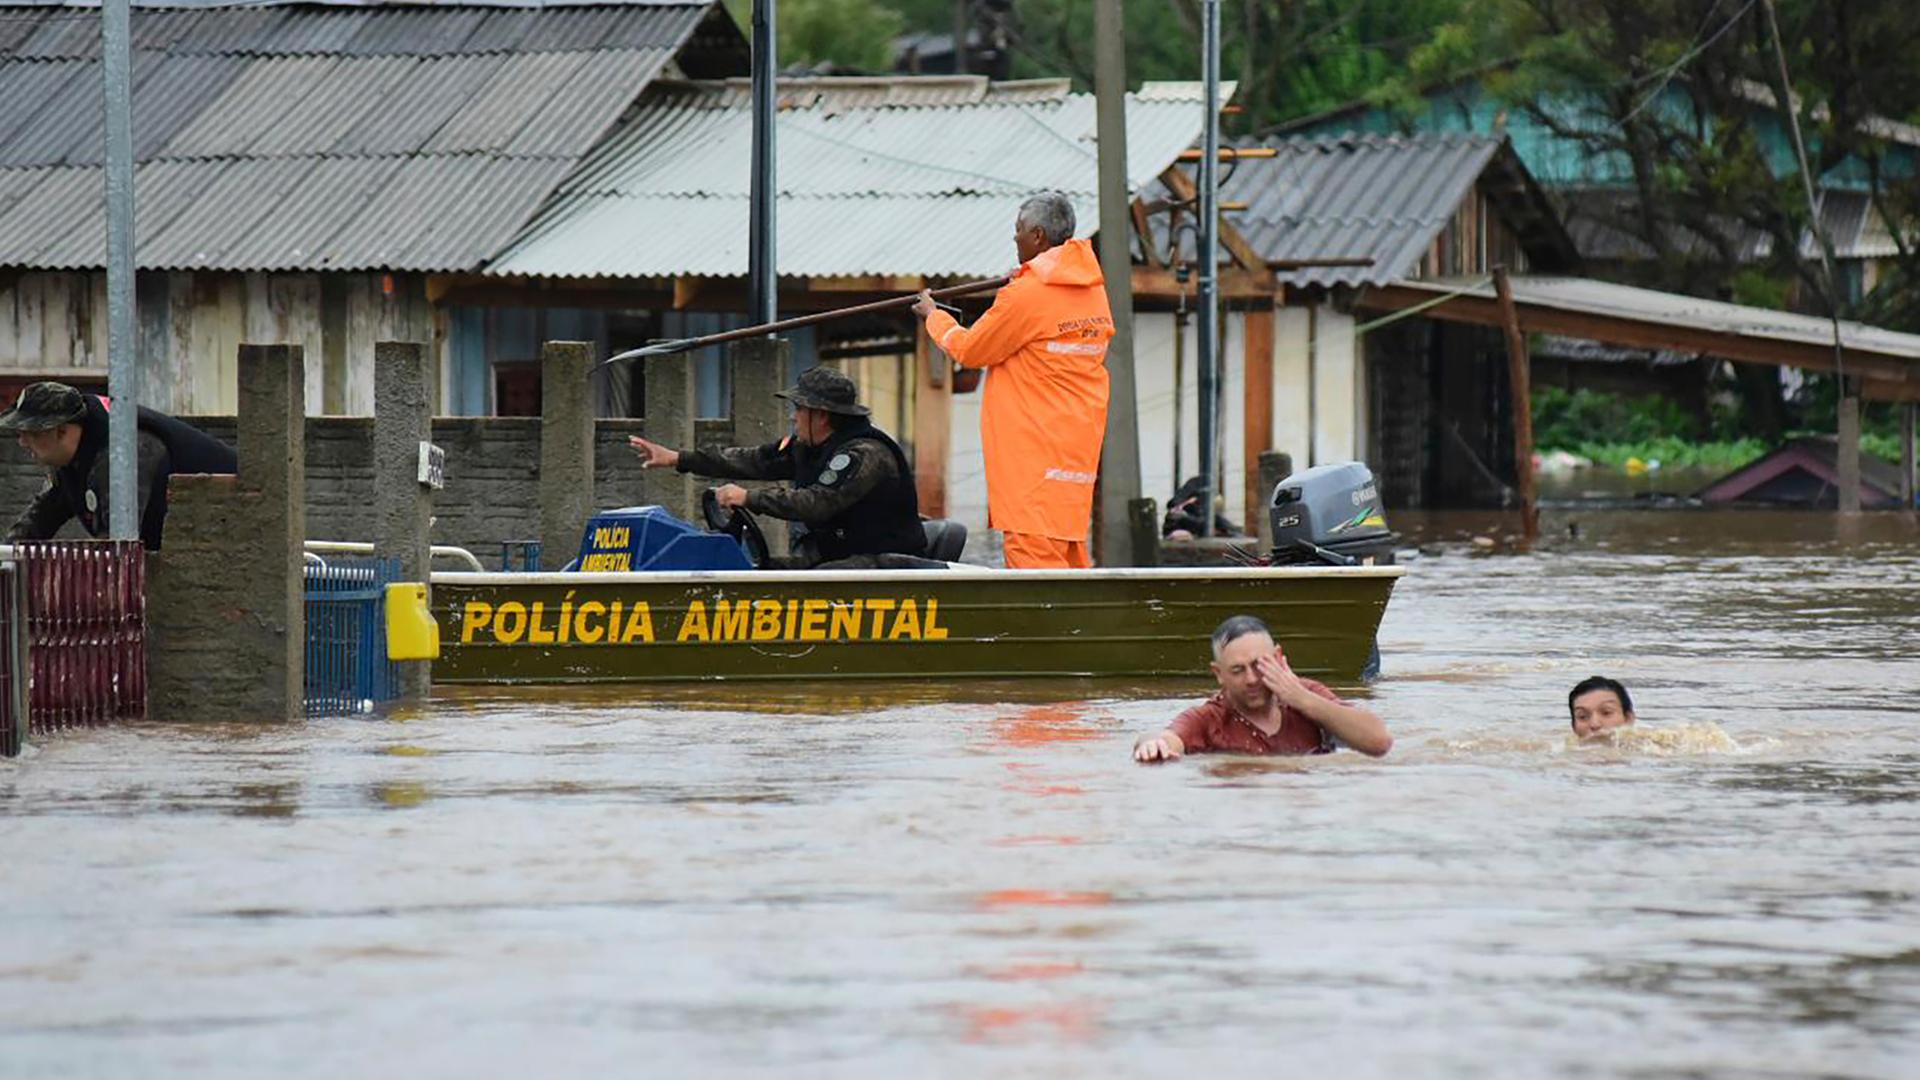  Polizeibeamte kontrollieren ein Haus, während Anwohner über eine überschwemmte Straße im Bundesstaat Rio Grande do Sul waten, nachdem ein Unwetter Überschwemmungen verursacht hat.